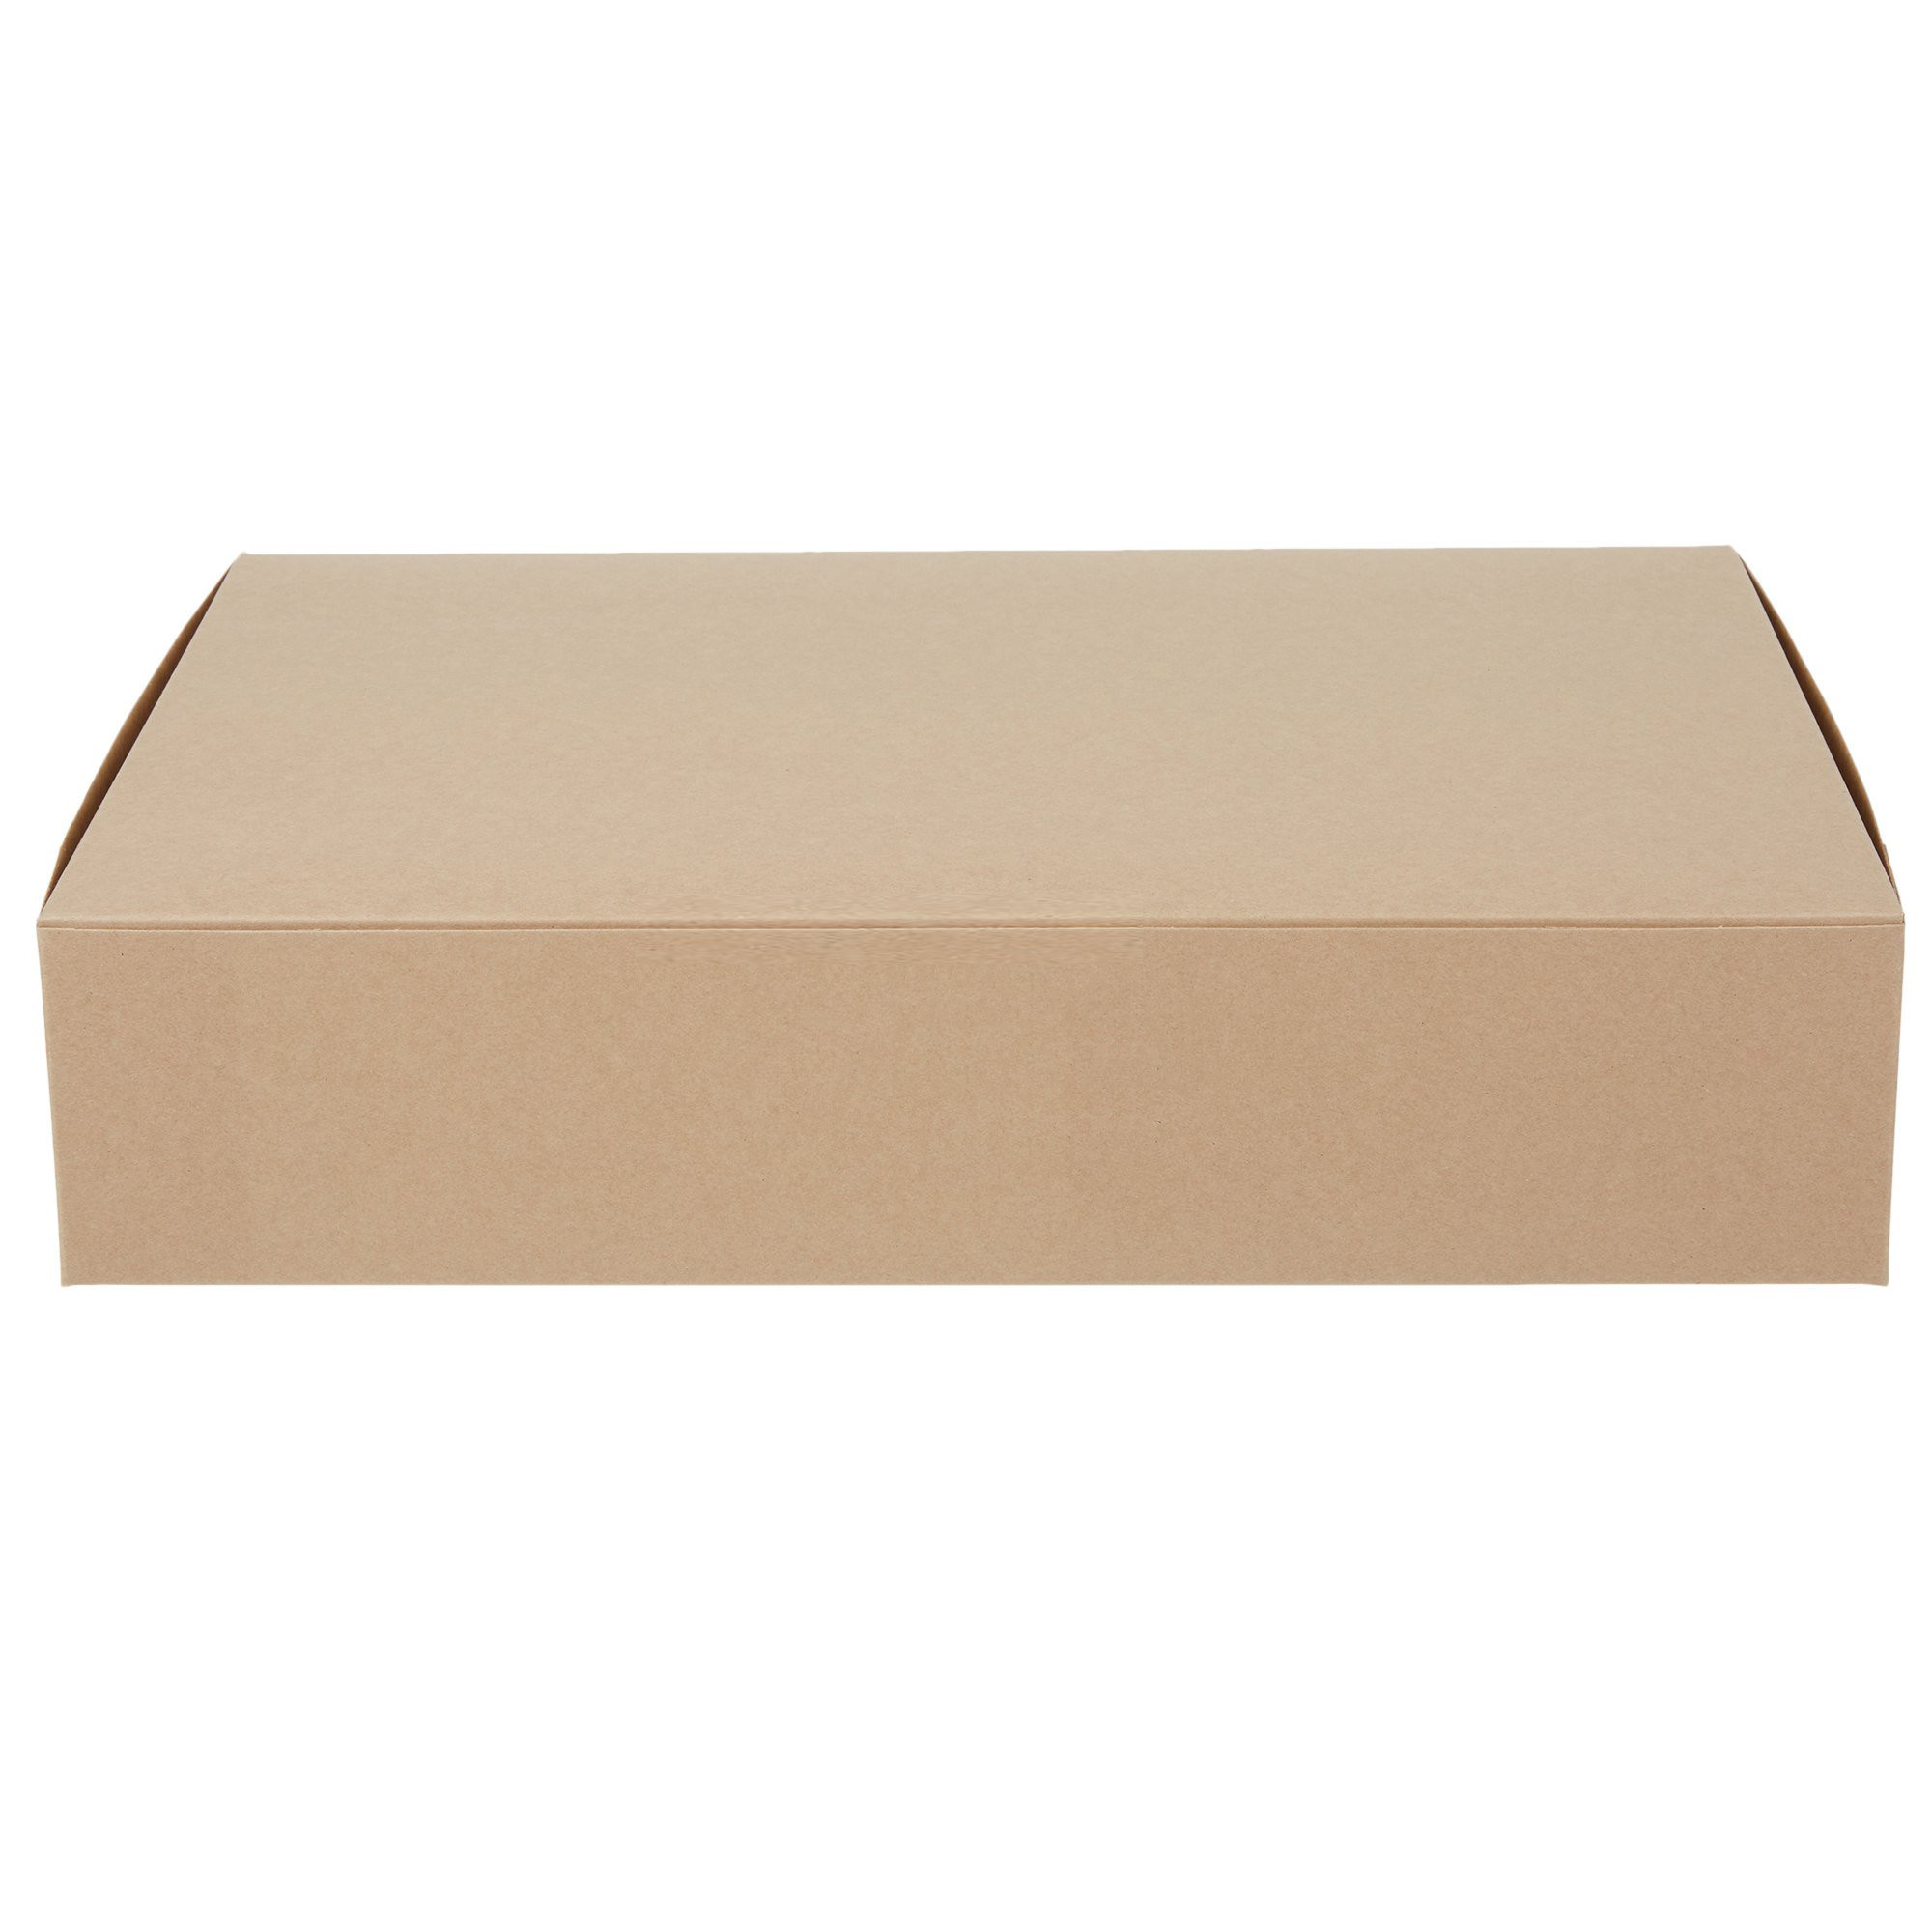 50 scatole per dolci in cartone ondulato extra forte 32 x 32 x 12 cm colore bianco